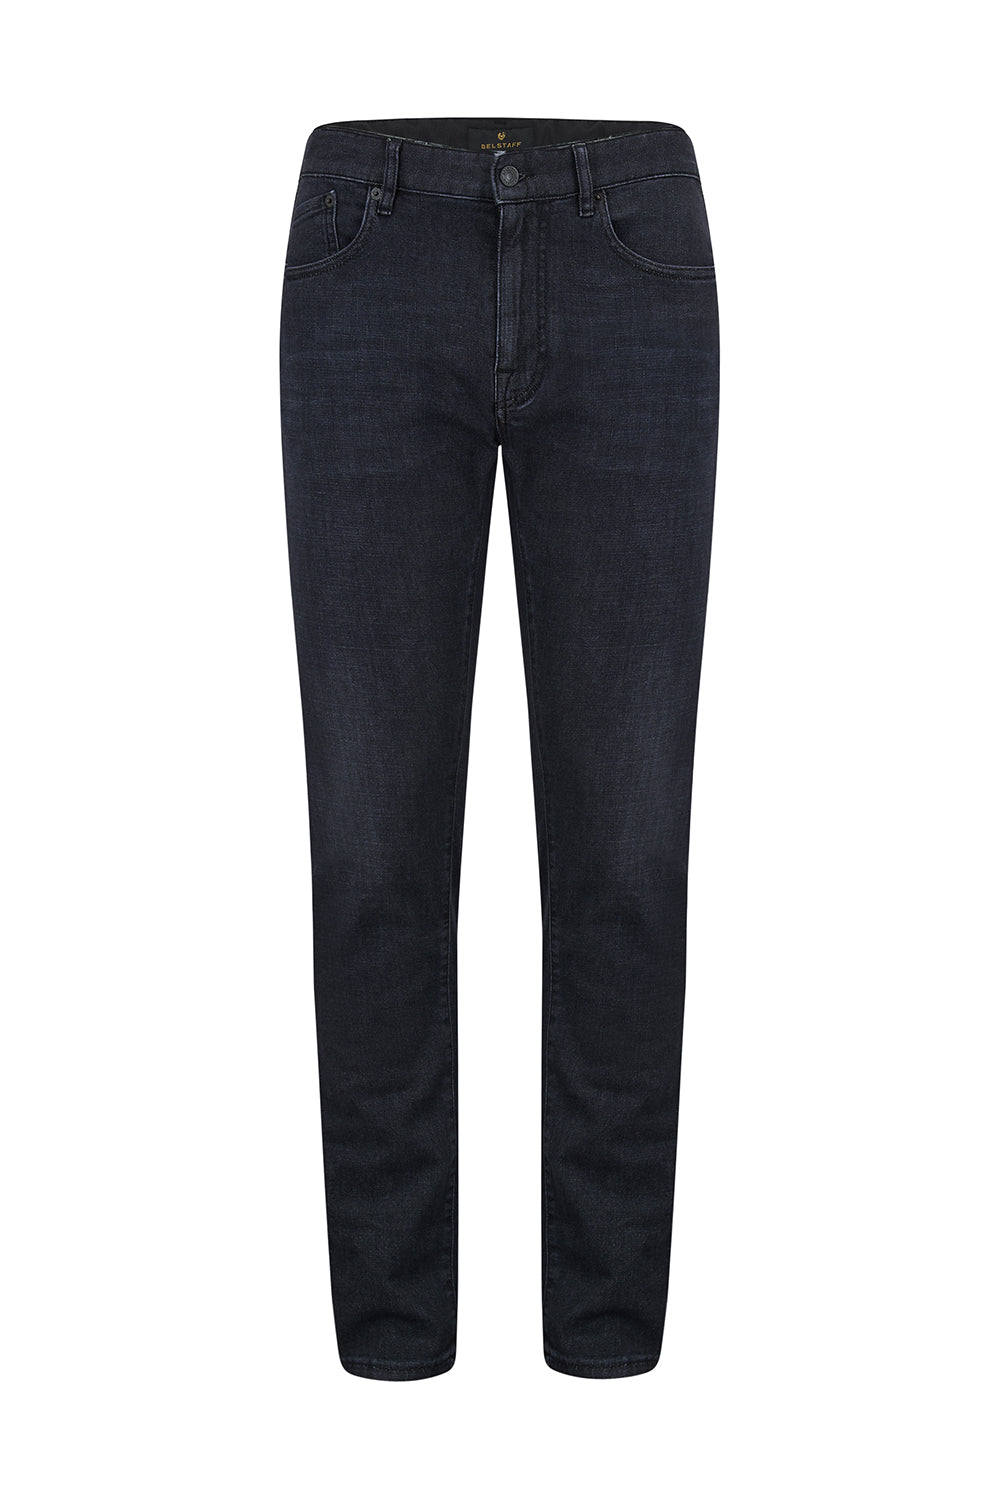 Belstaff Men's Longton Slim Jeans Black - Front View